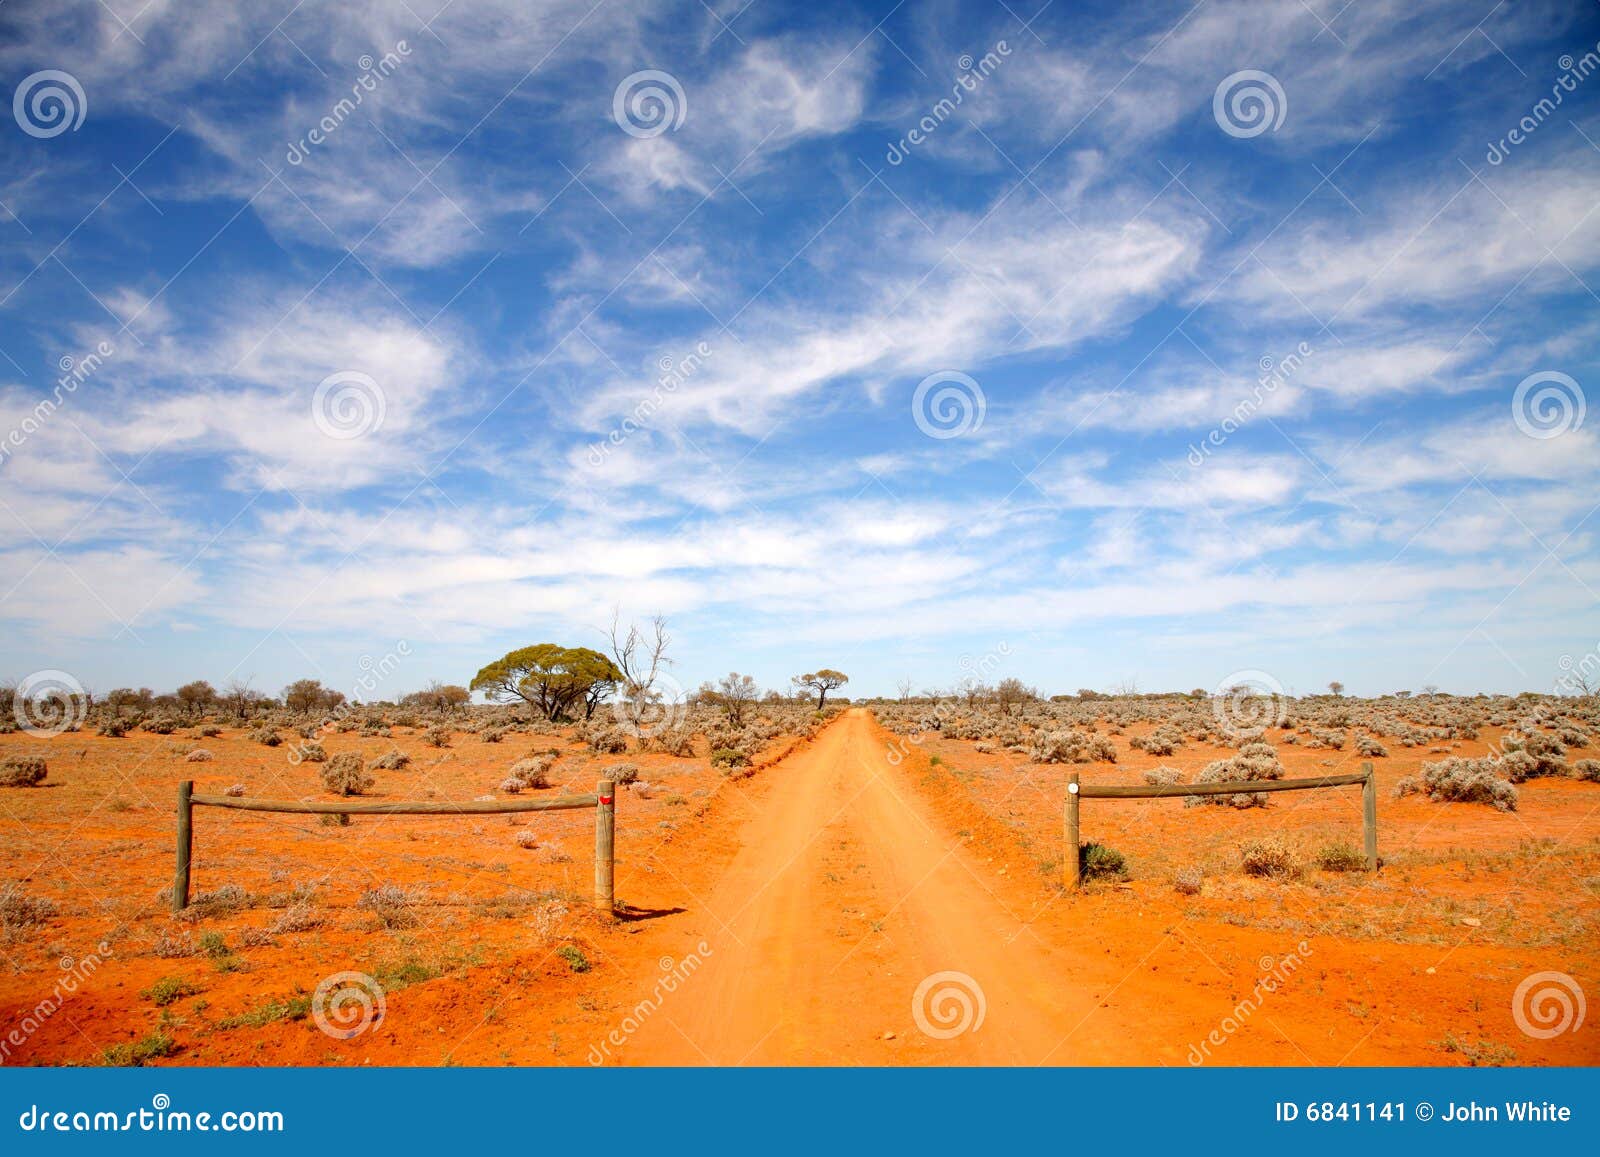 outback road australia